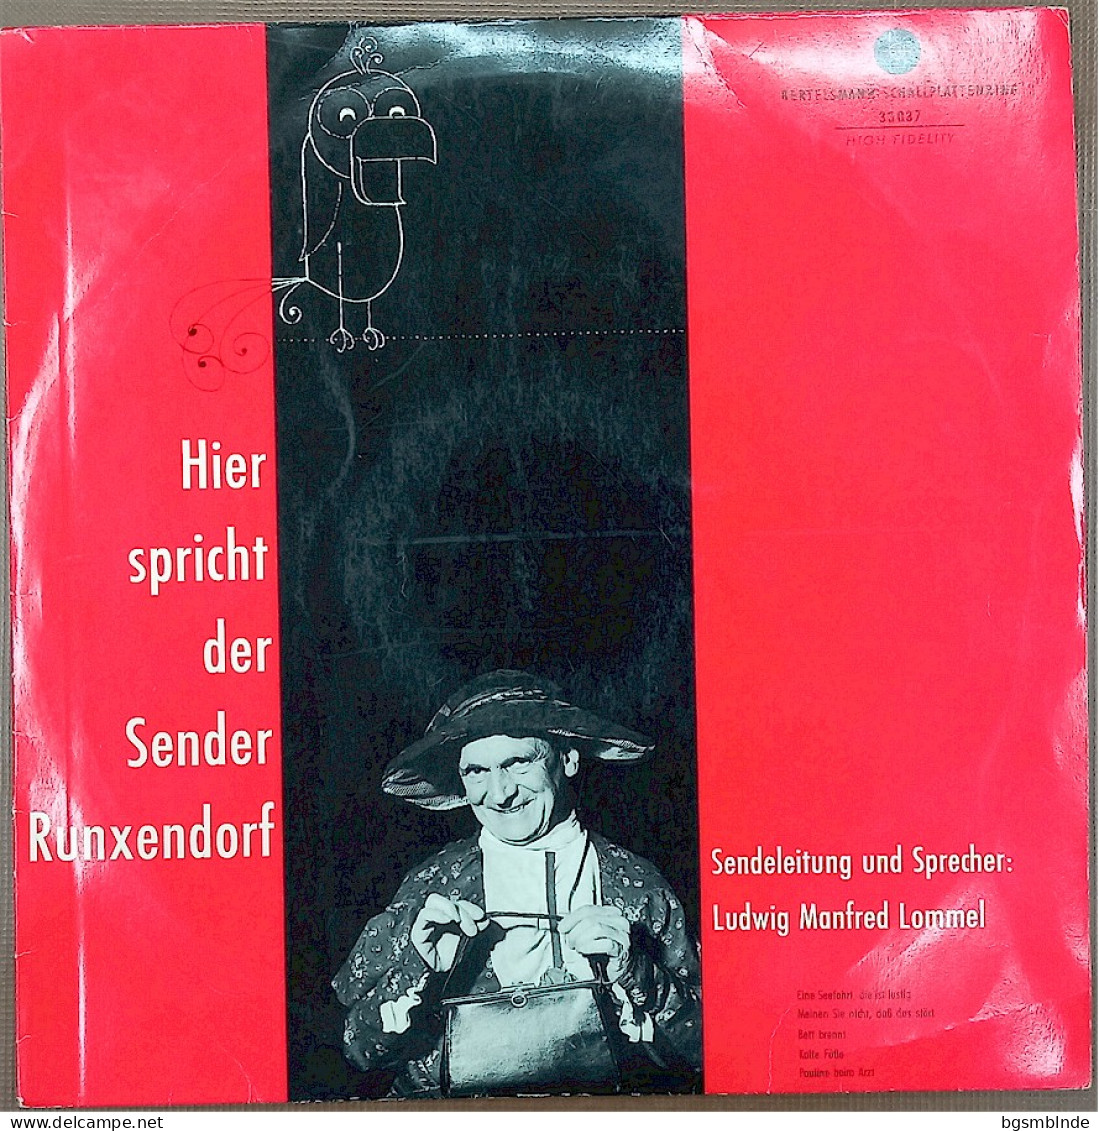 Hier Spricht Der Sender Runxendorf / Ludwig Manfred Lommel - Sonstige - Deutsche Musik